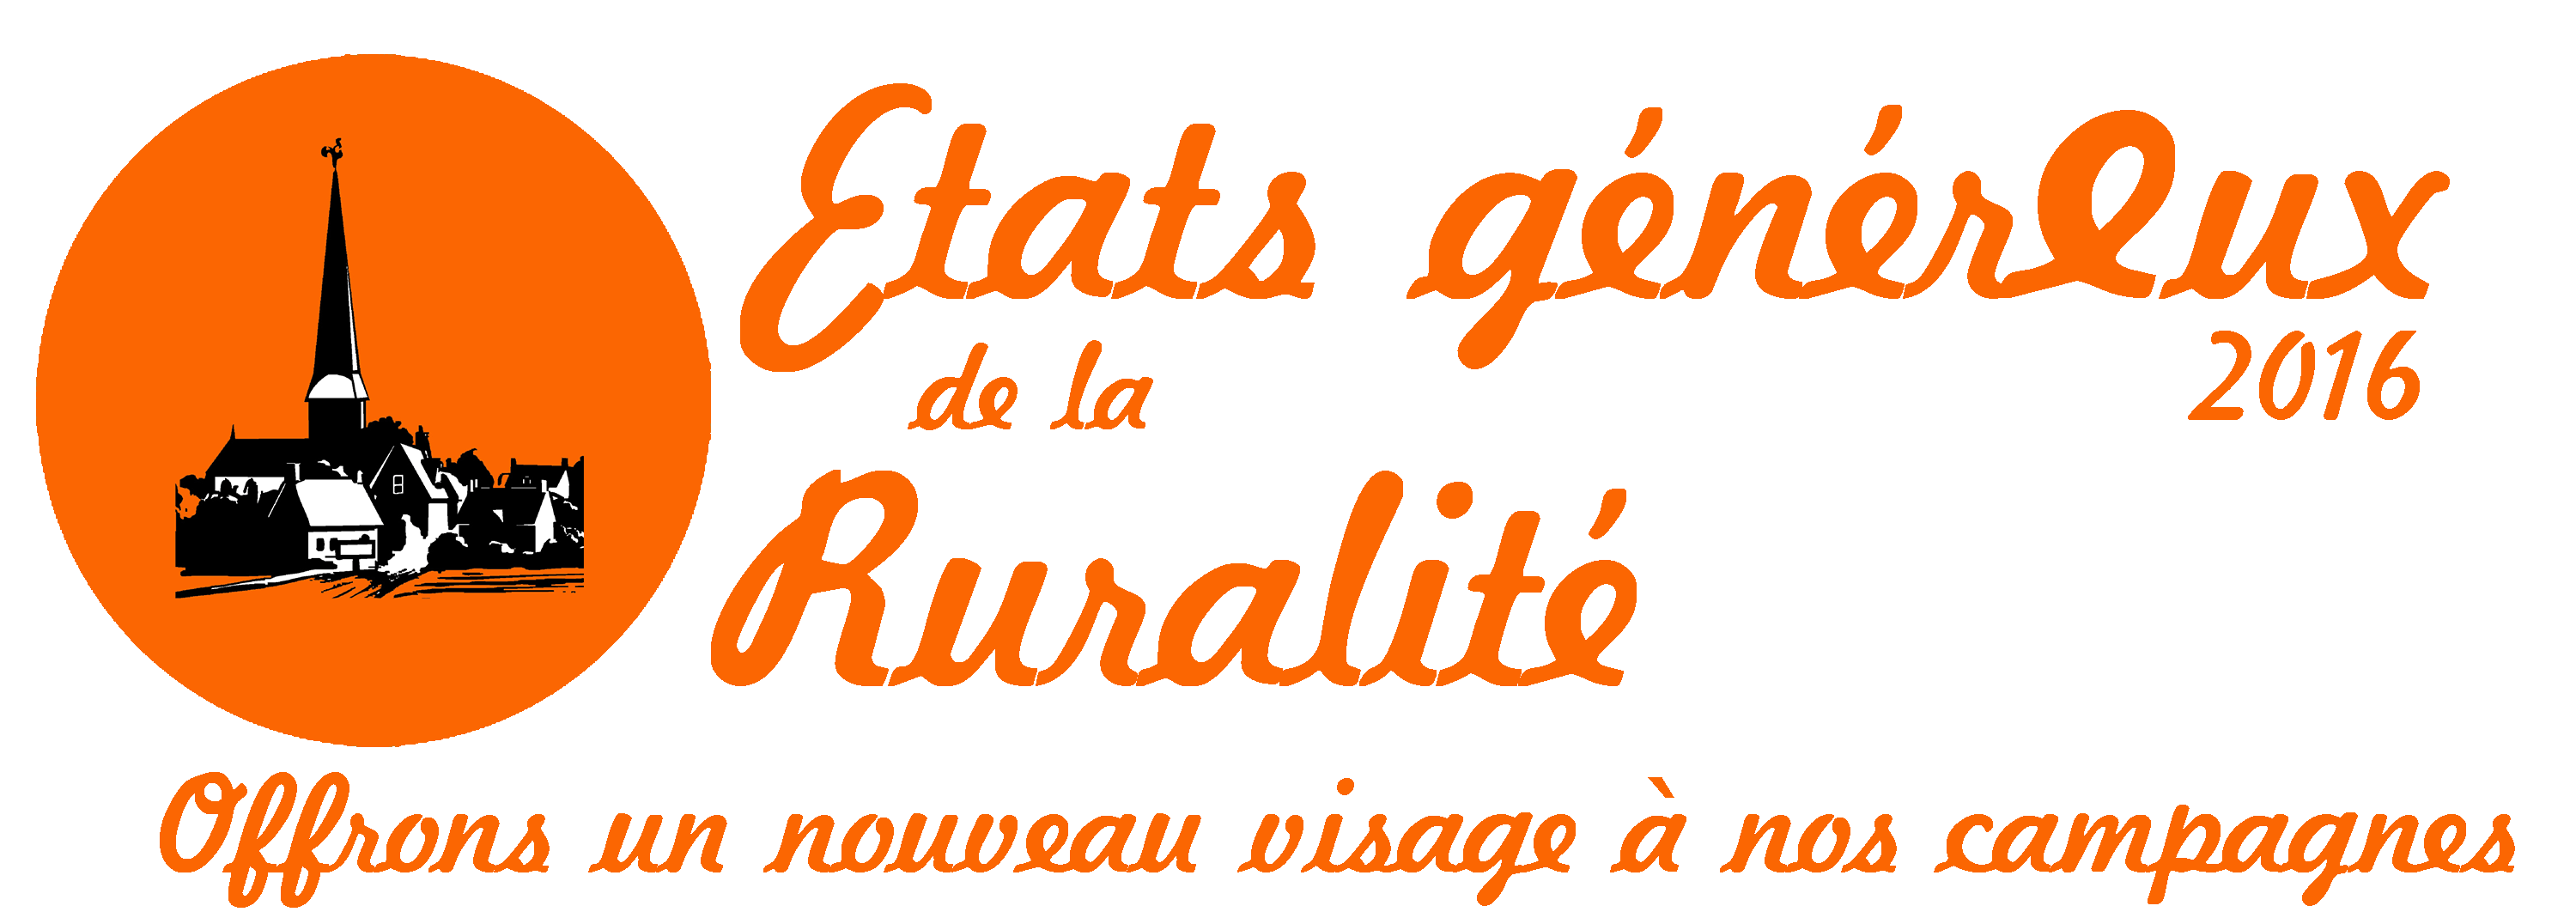 etats-orange